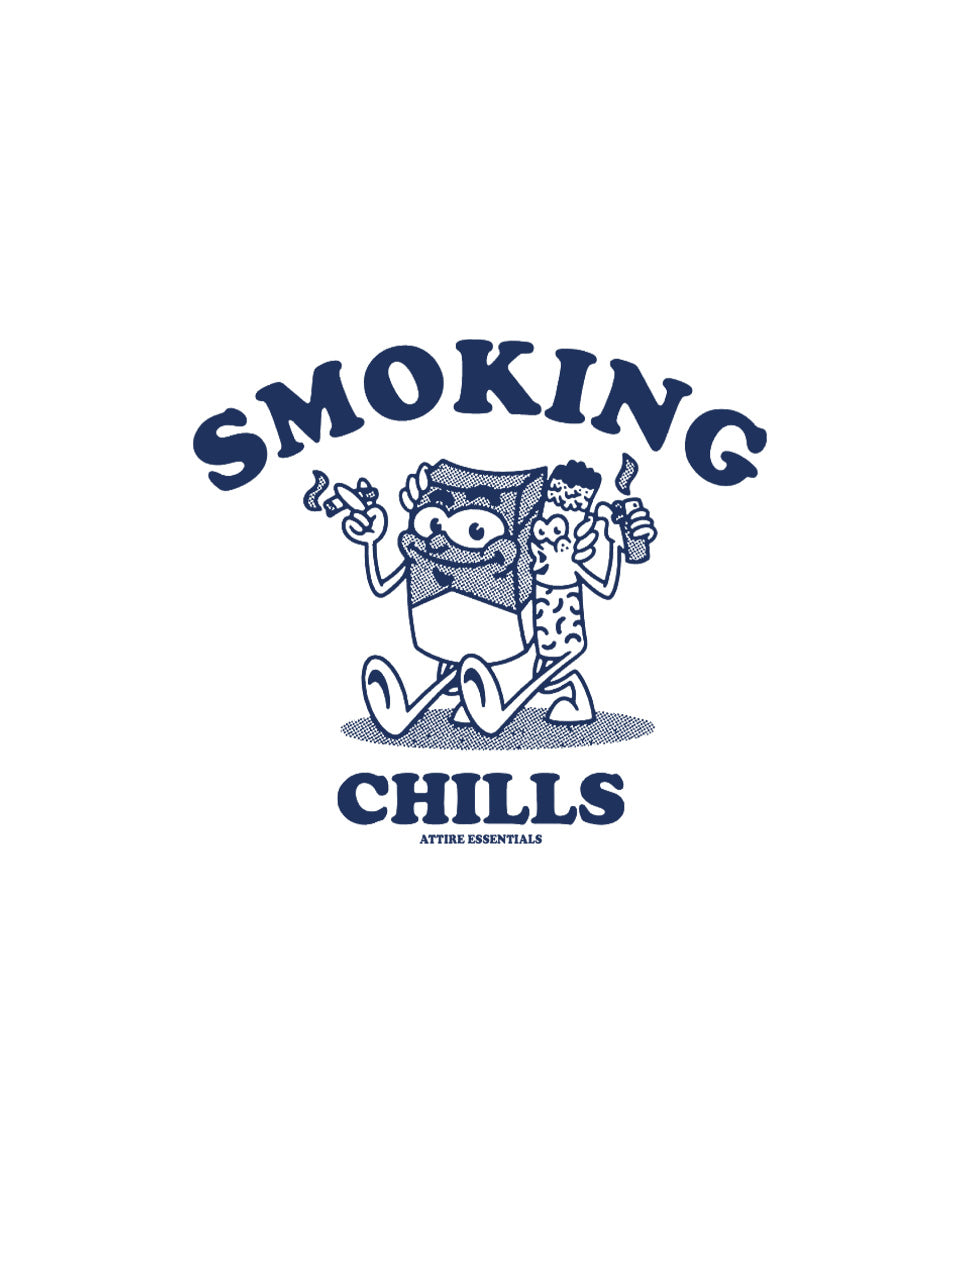 SMOKING CHILLS